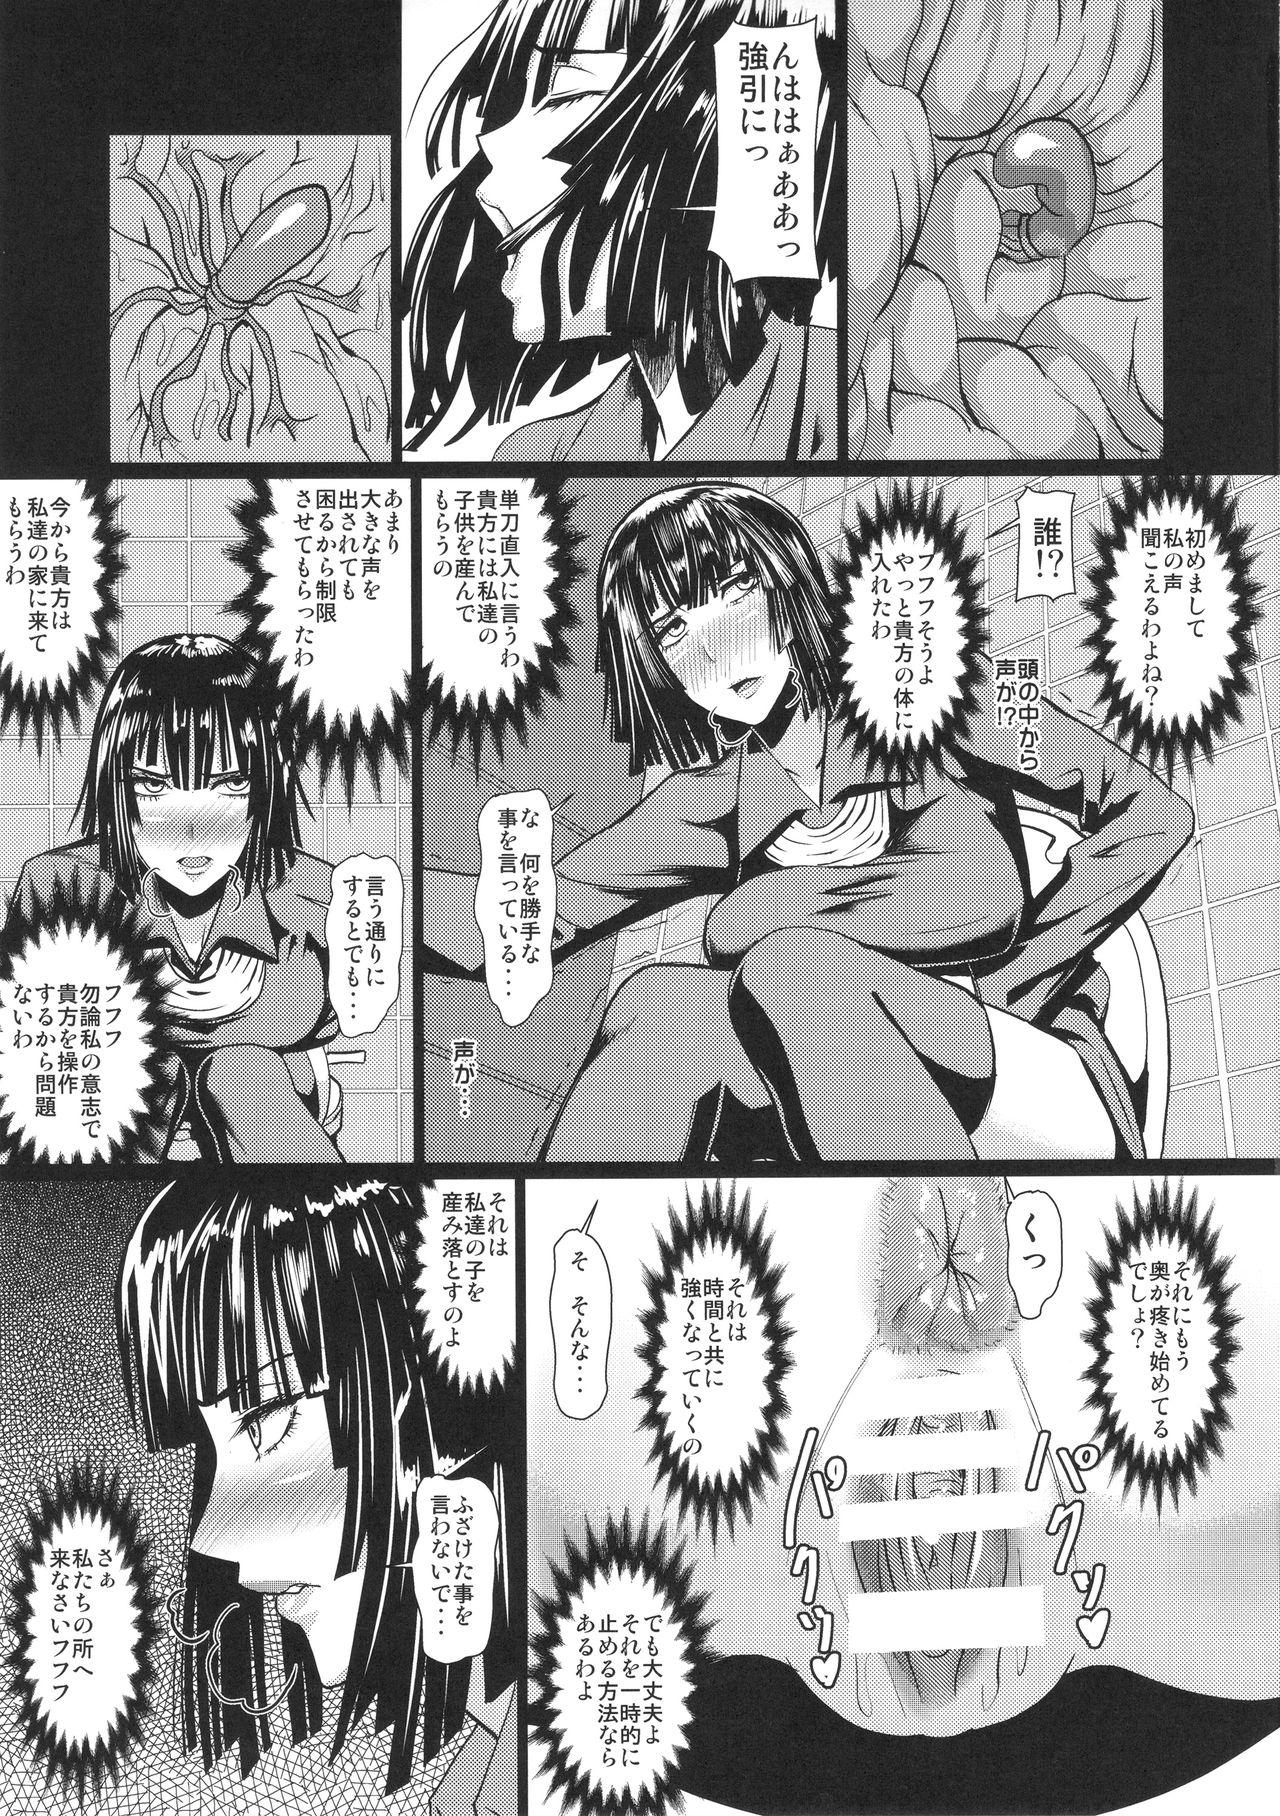 Fake Tits Fubuki-sama no Shirarezaru Nichijou - One punch man Seduction Porn - Page 6